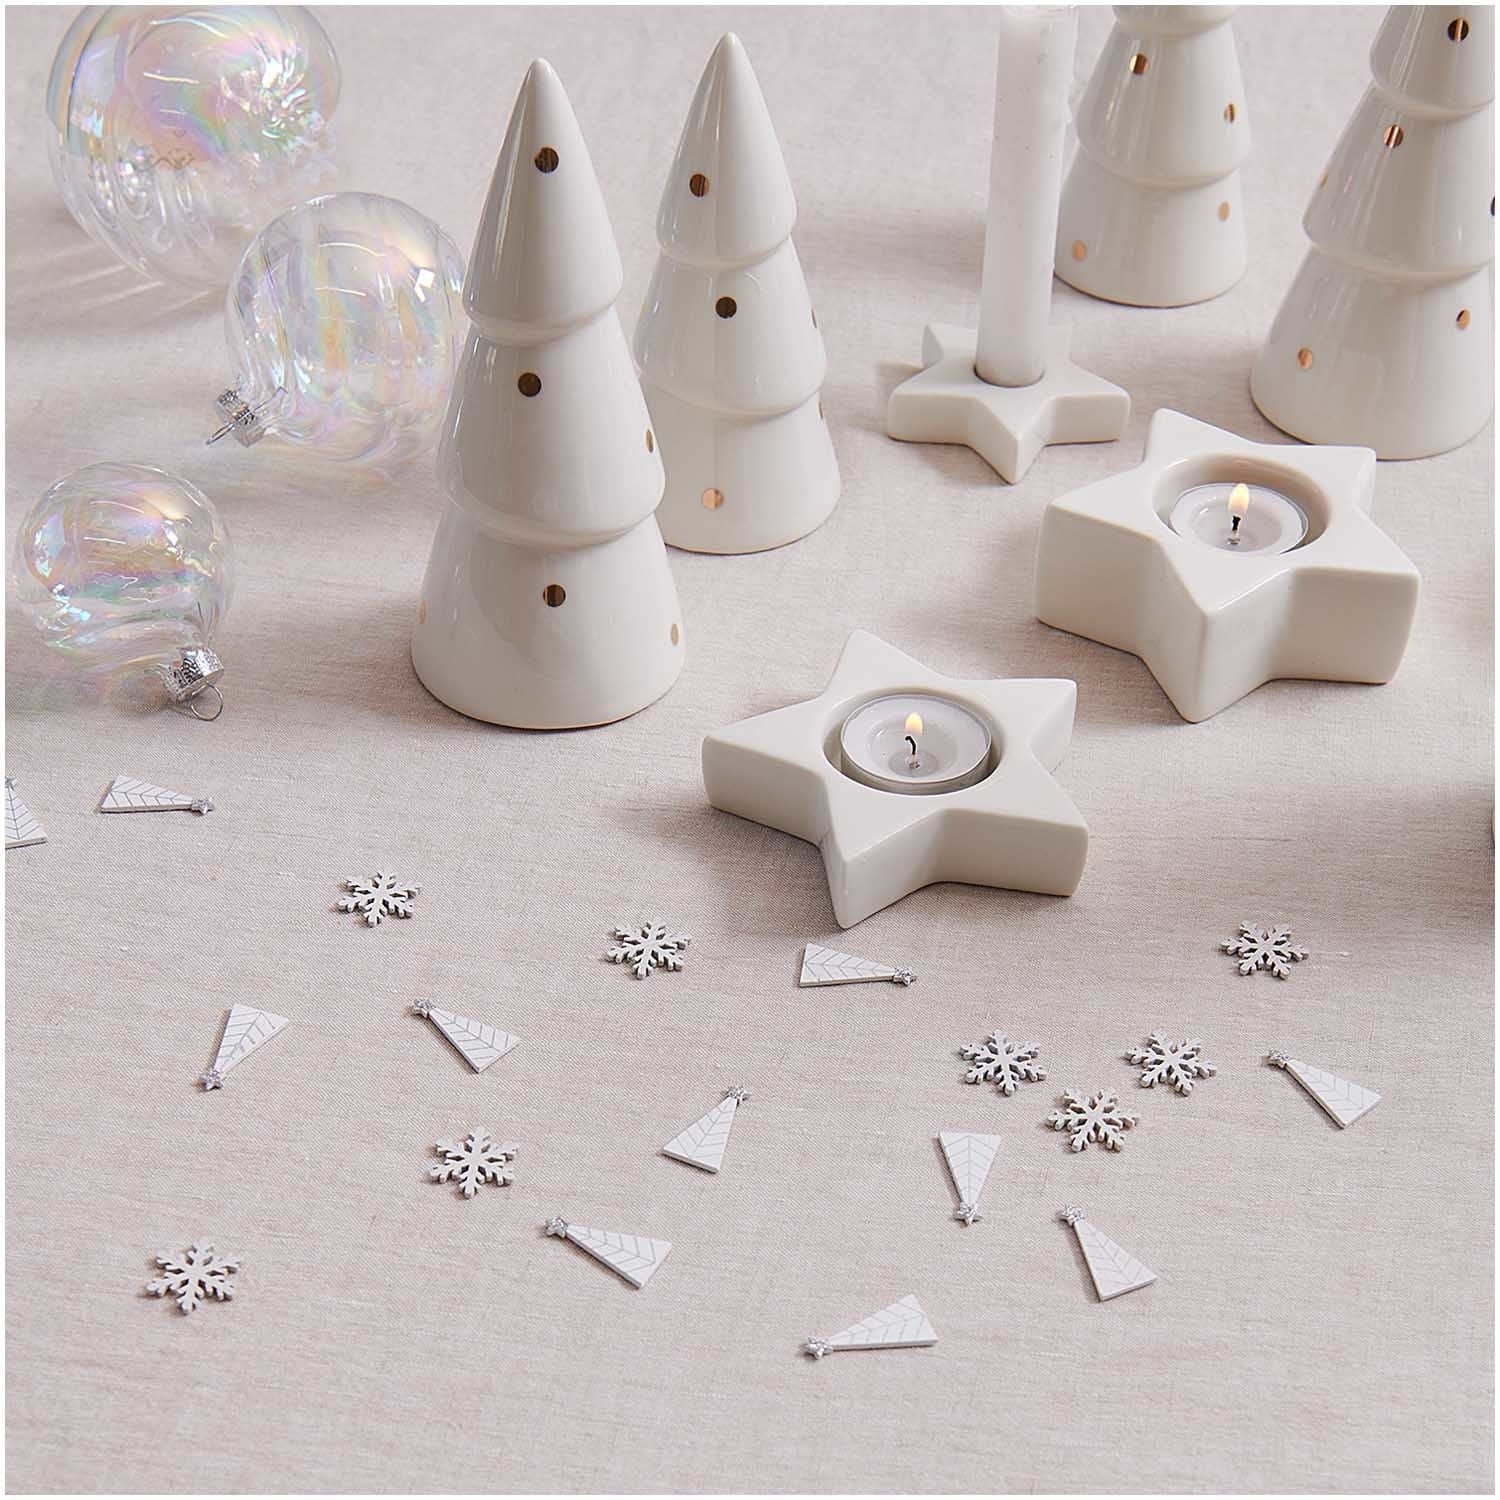 Wooden Snowflake Christmas Table Confetti | Eco Confetti Rico Design